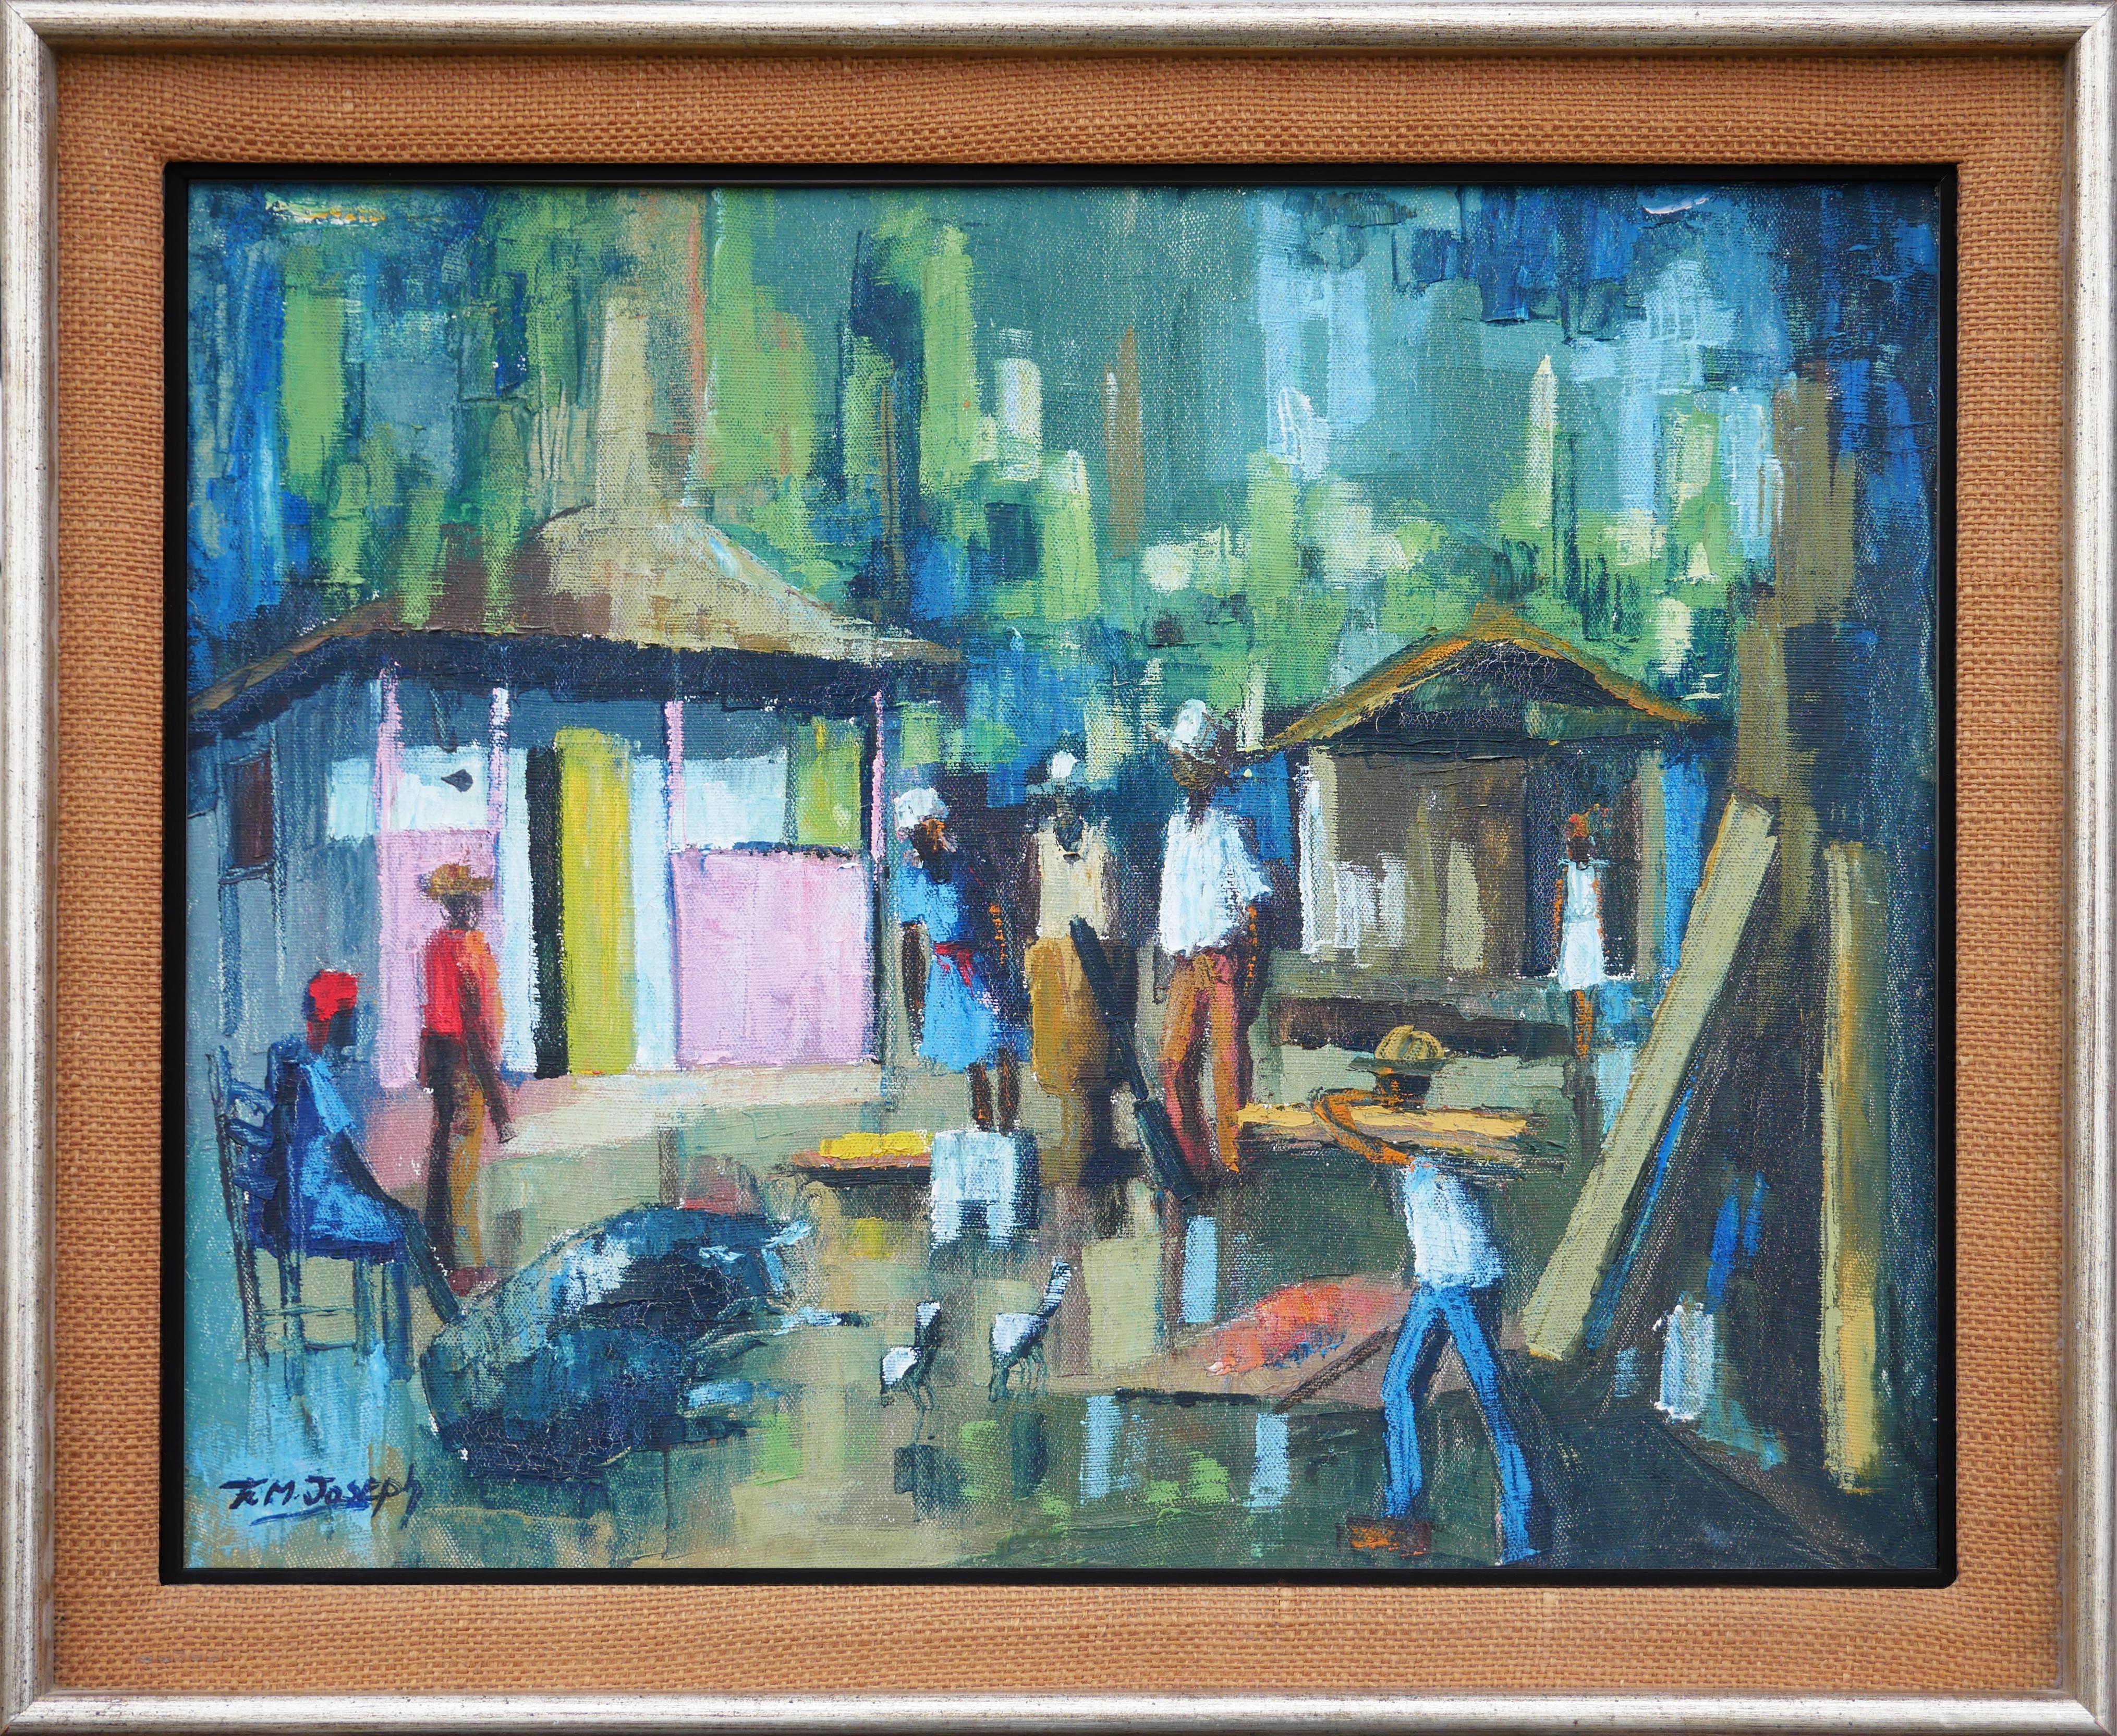 Abstract Painting Franklin M. Joseph - Scène de paysage de village abstrait bleu et vert d'inspiration post-impressionniste